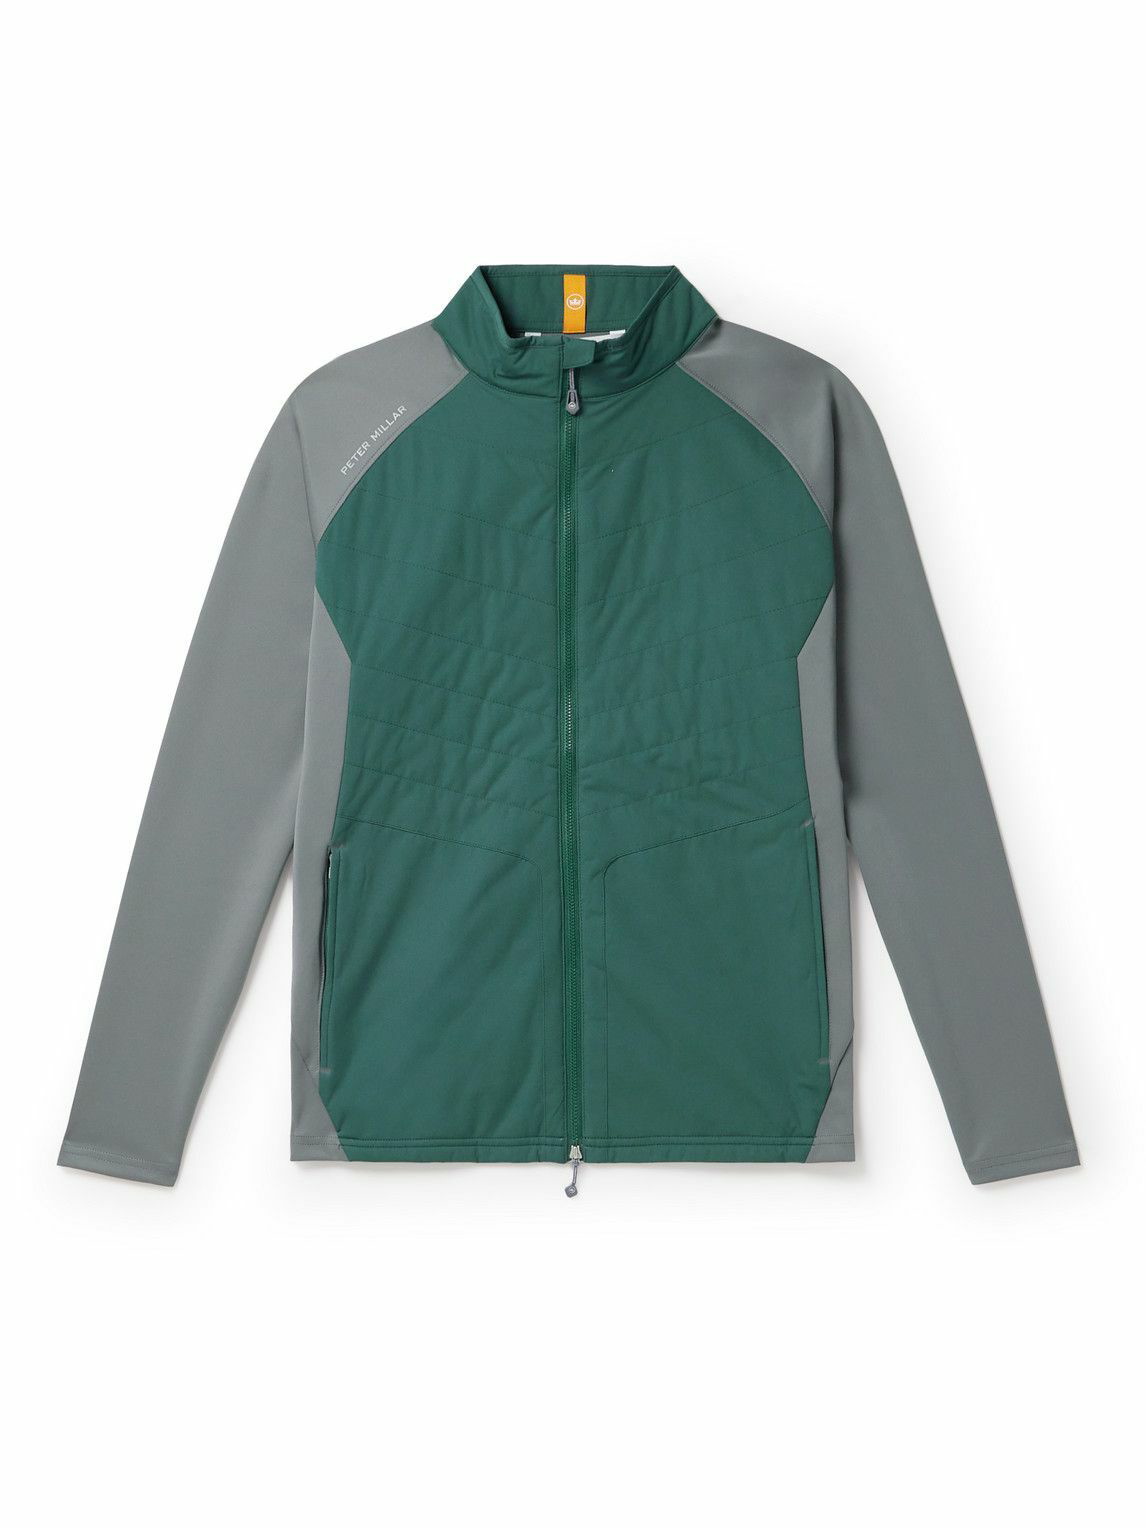 PETER MILLAR Hyperlight Shield Nylon Half-Zip Golf Jacket for Men